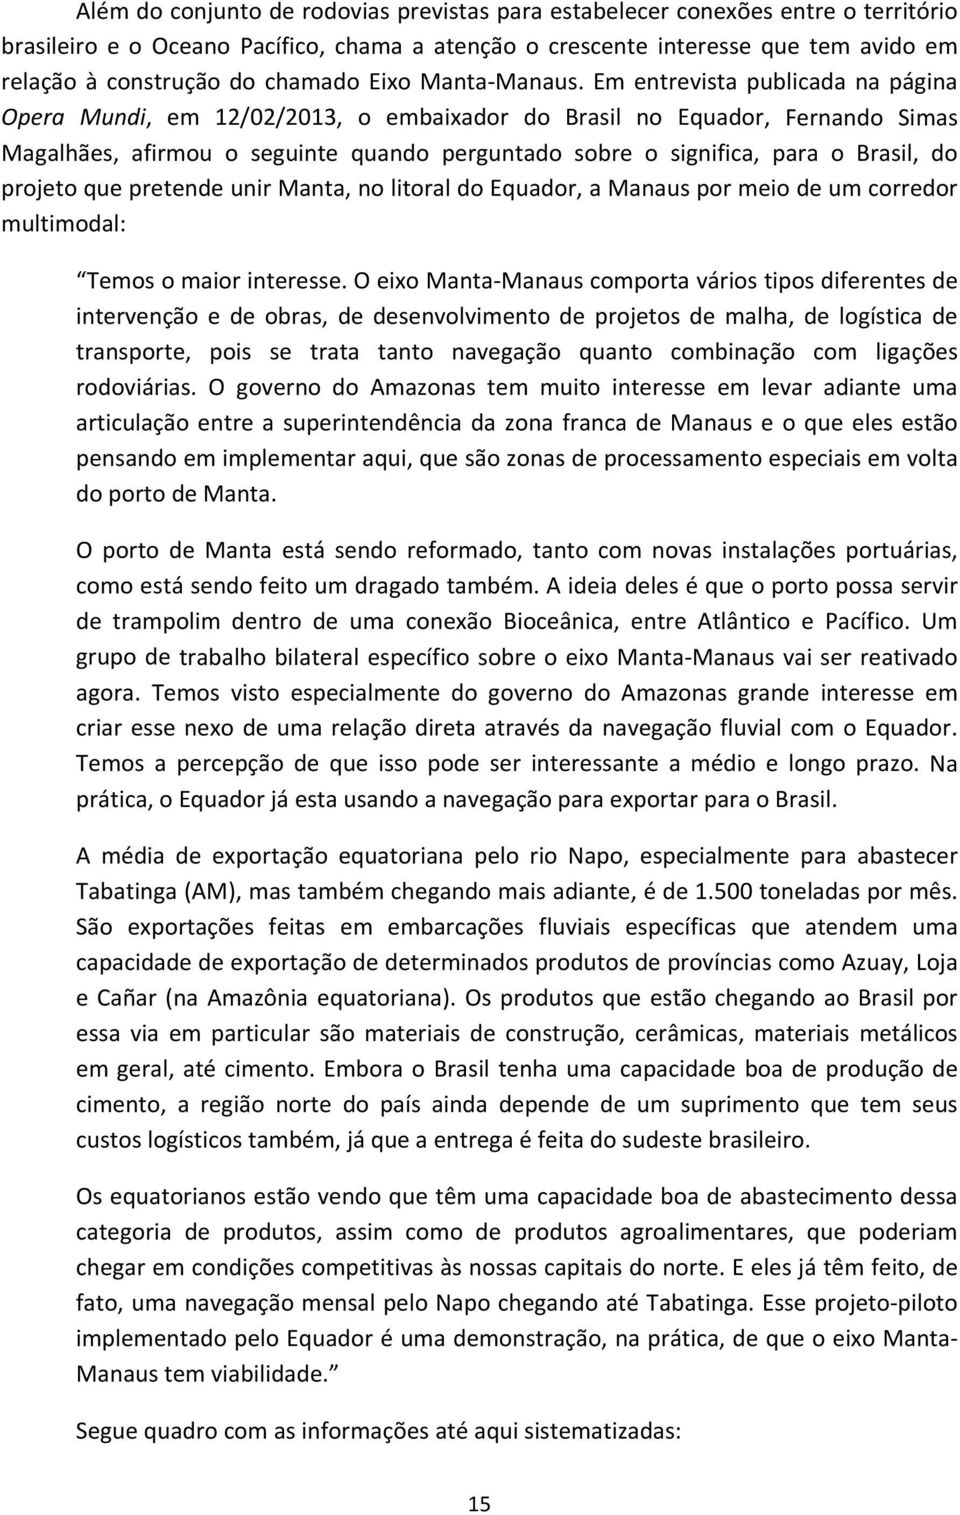 Em entrevista publicada na página Opera Mundi, em 12/02/2013, o embaixador do Brasil no Equador, Fernando Simas Magalhães, afirmou o seguinte quando perguntado sobre o significa, para o Brasil, do